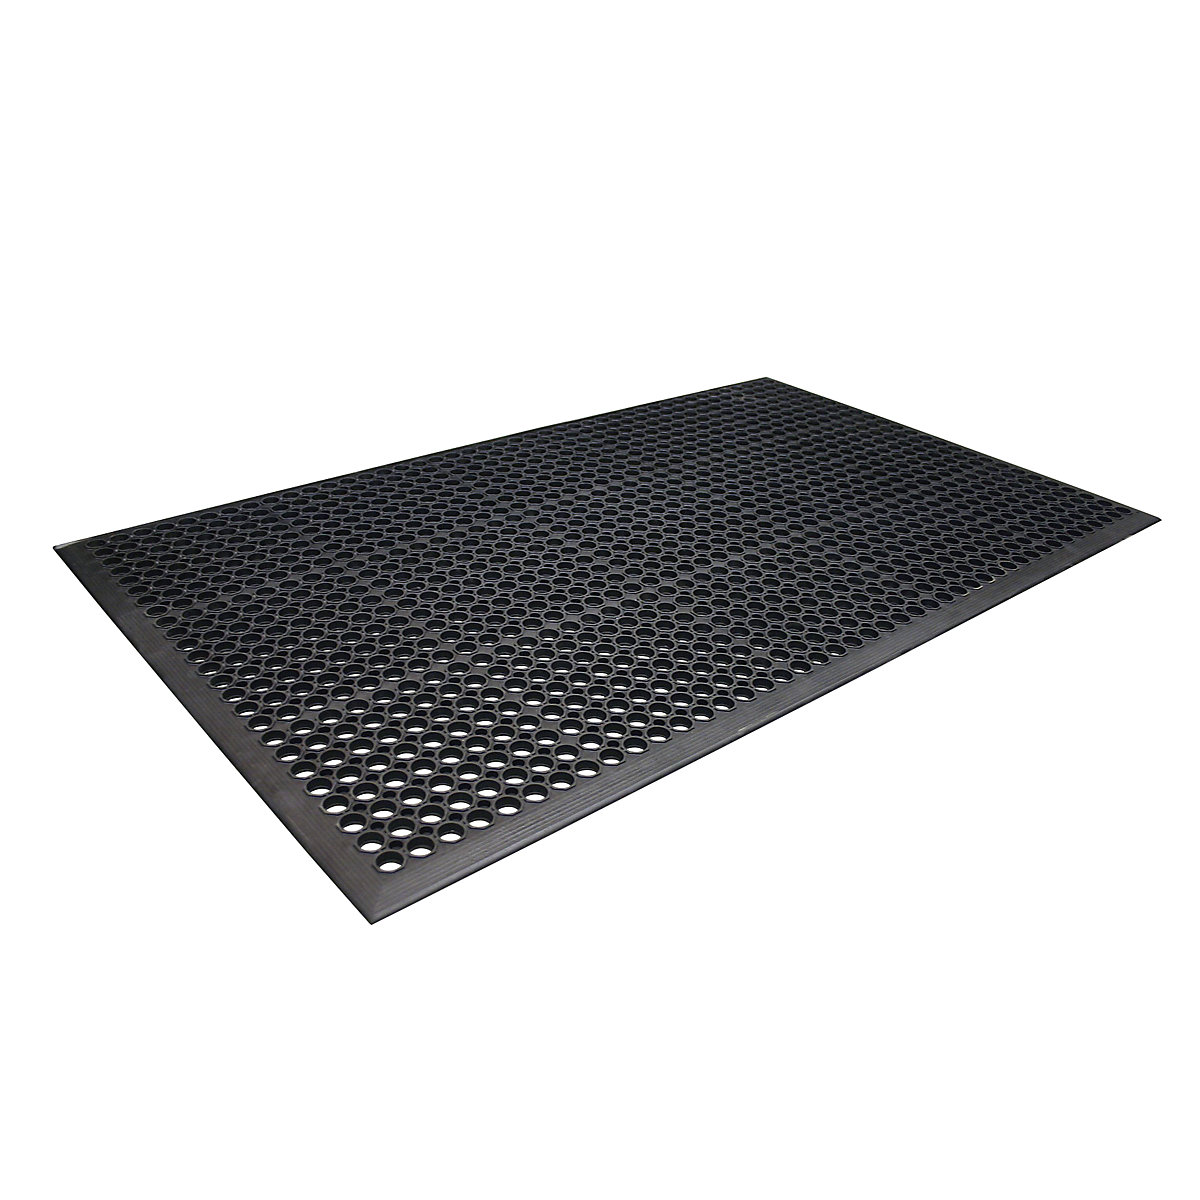 Rampmat perforated rubber matting – COBA